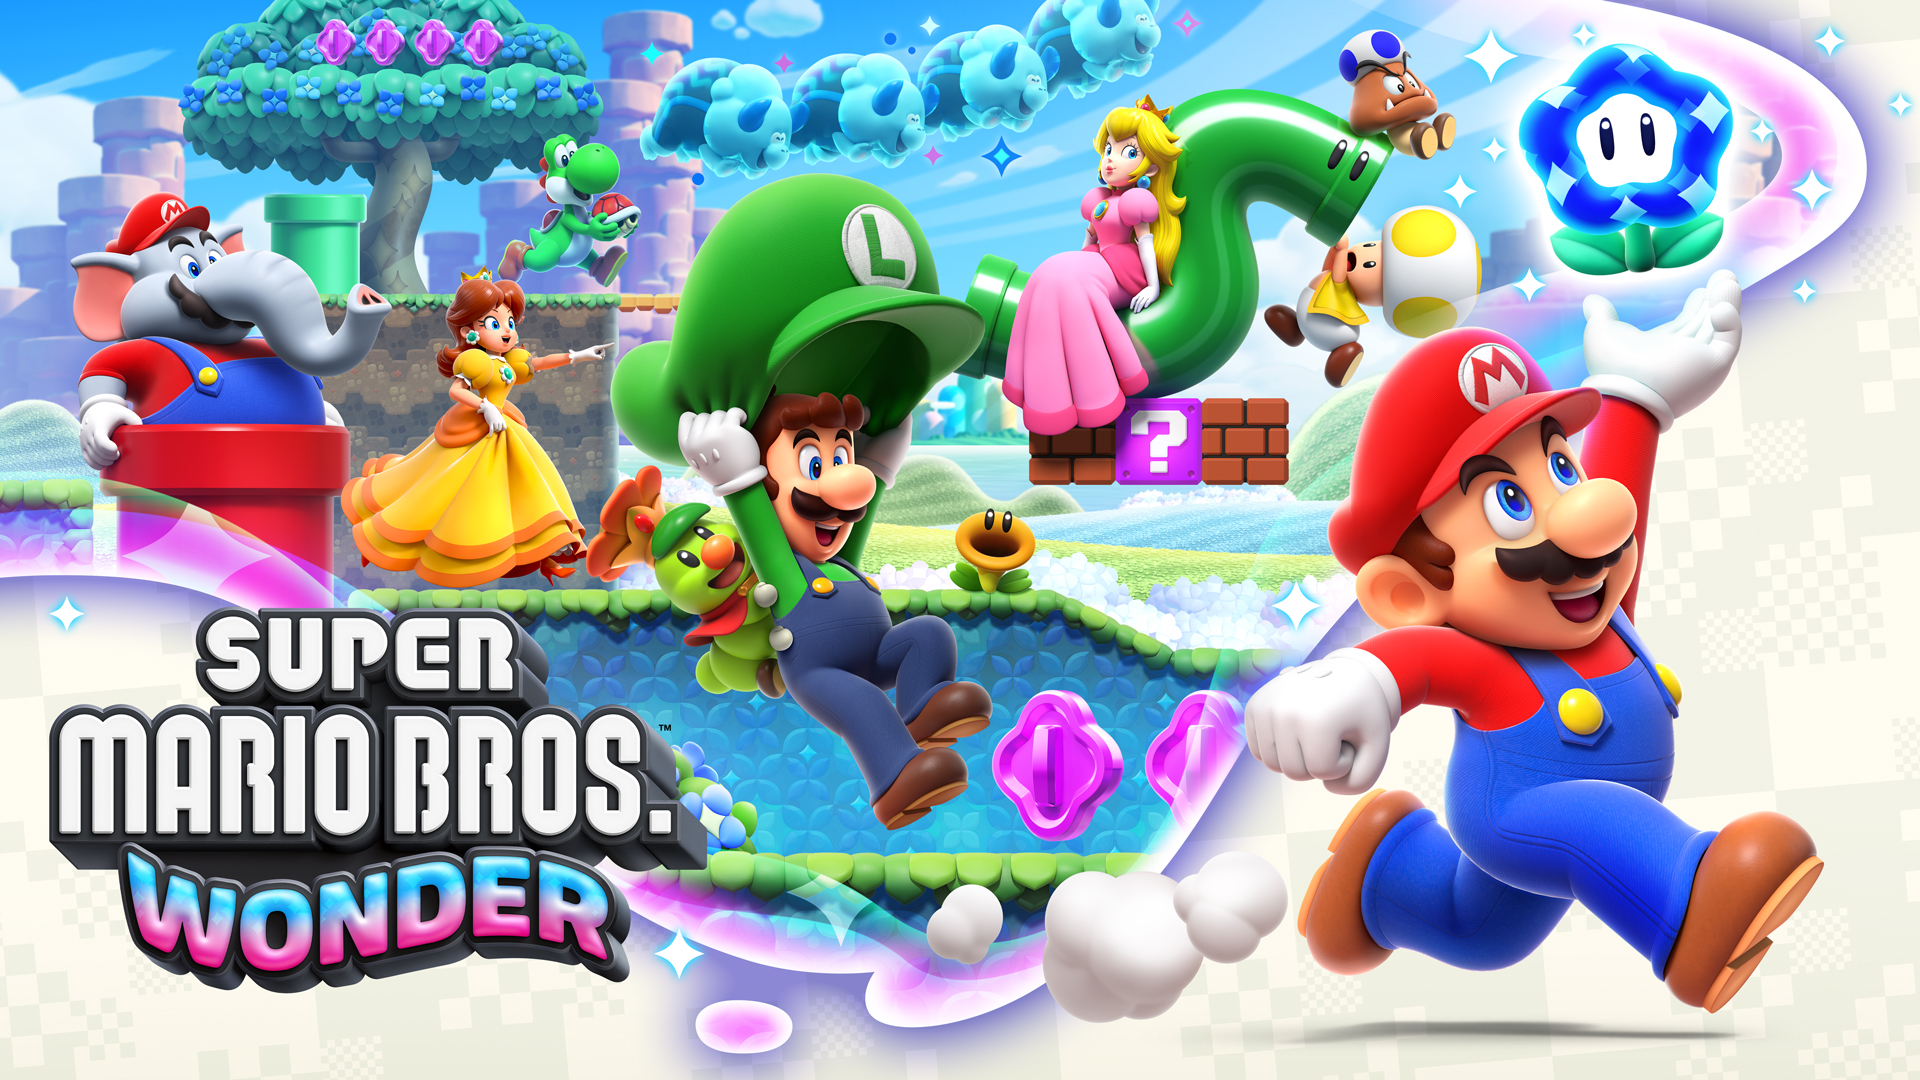 Super Mario Bros. Wonder – October 20th